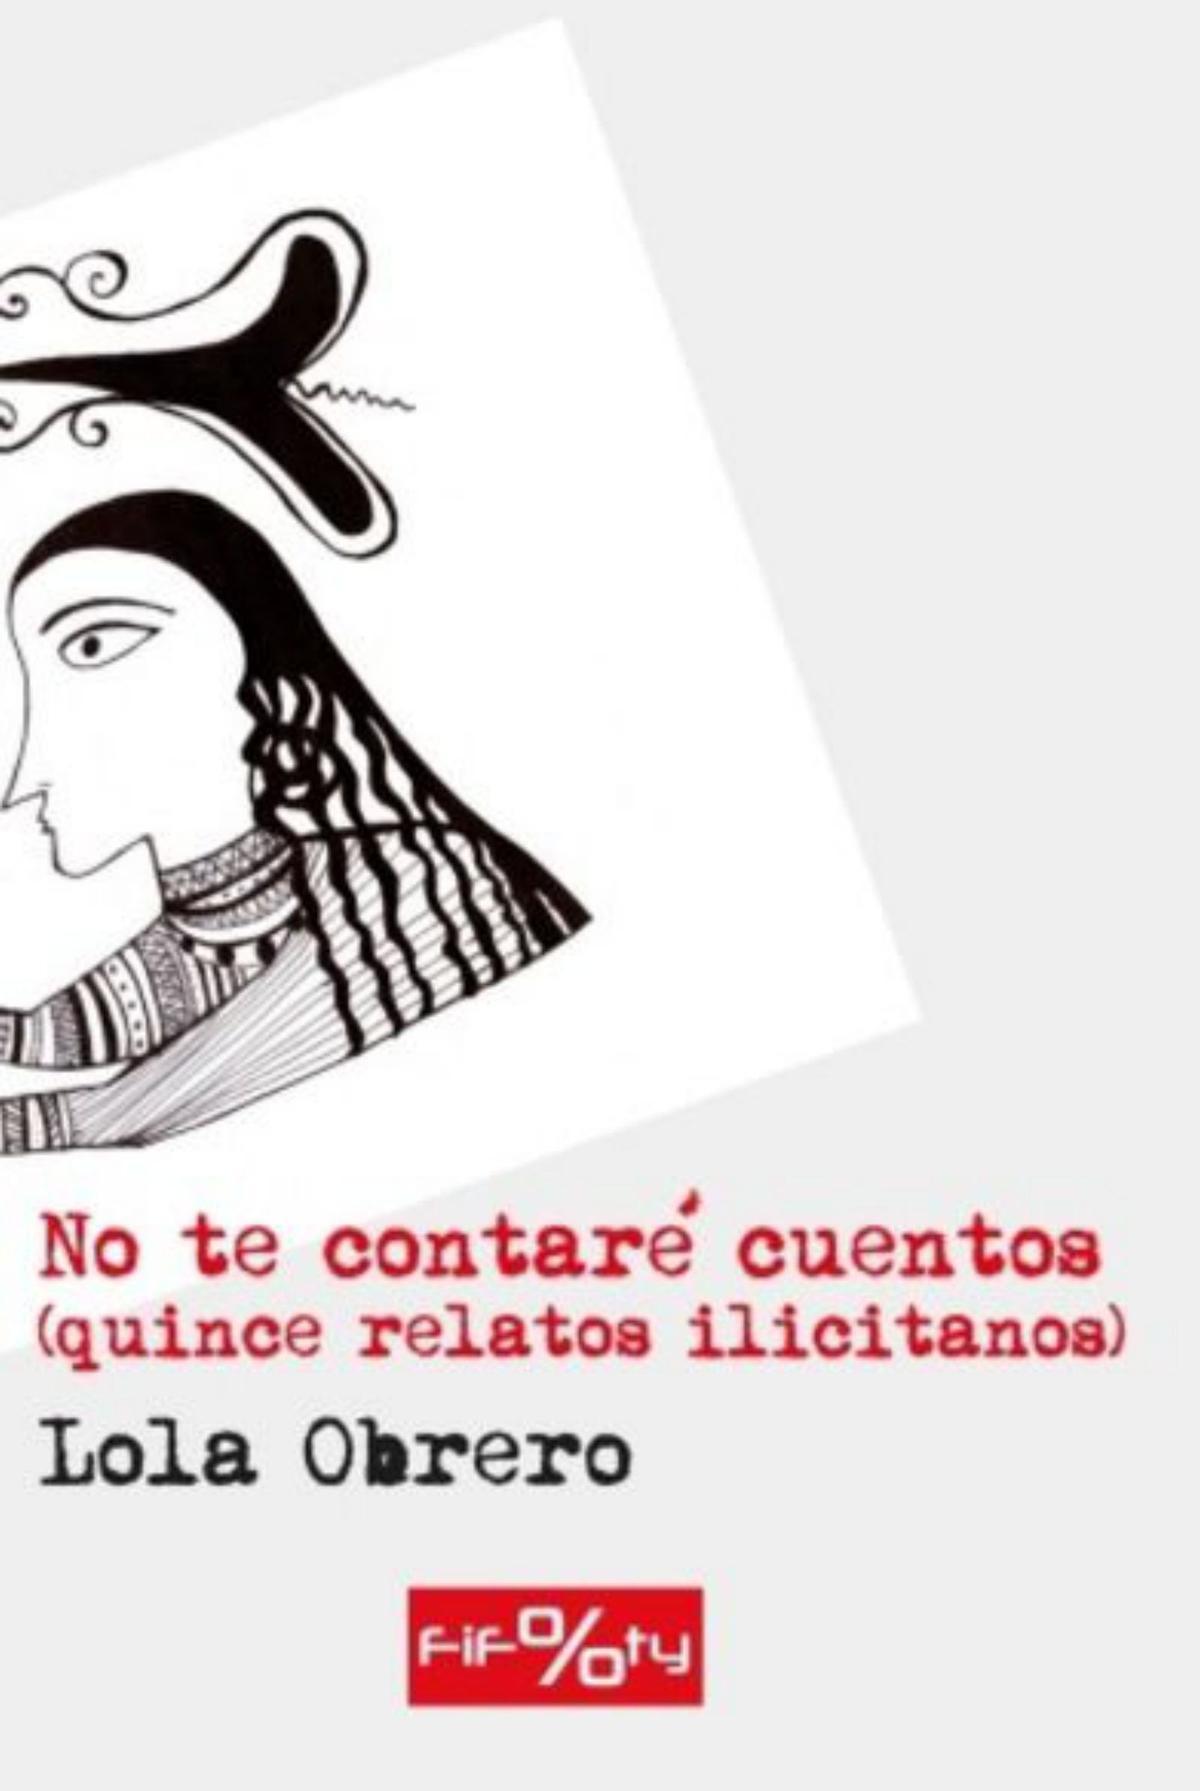 Lola Obrero No te contaré cuentos (quince relatos ilicitanos) Editorial Frutos del tiempo 174 páginas / 12 euros